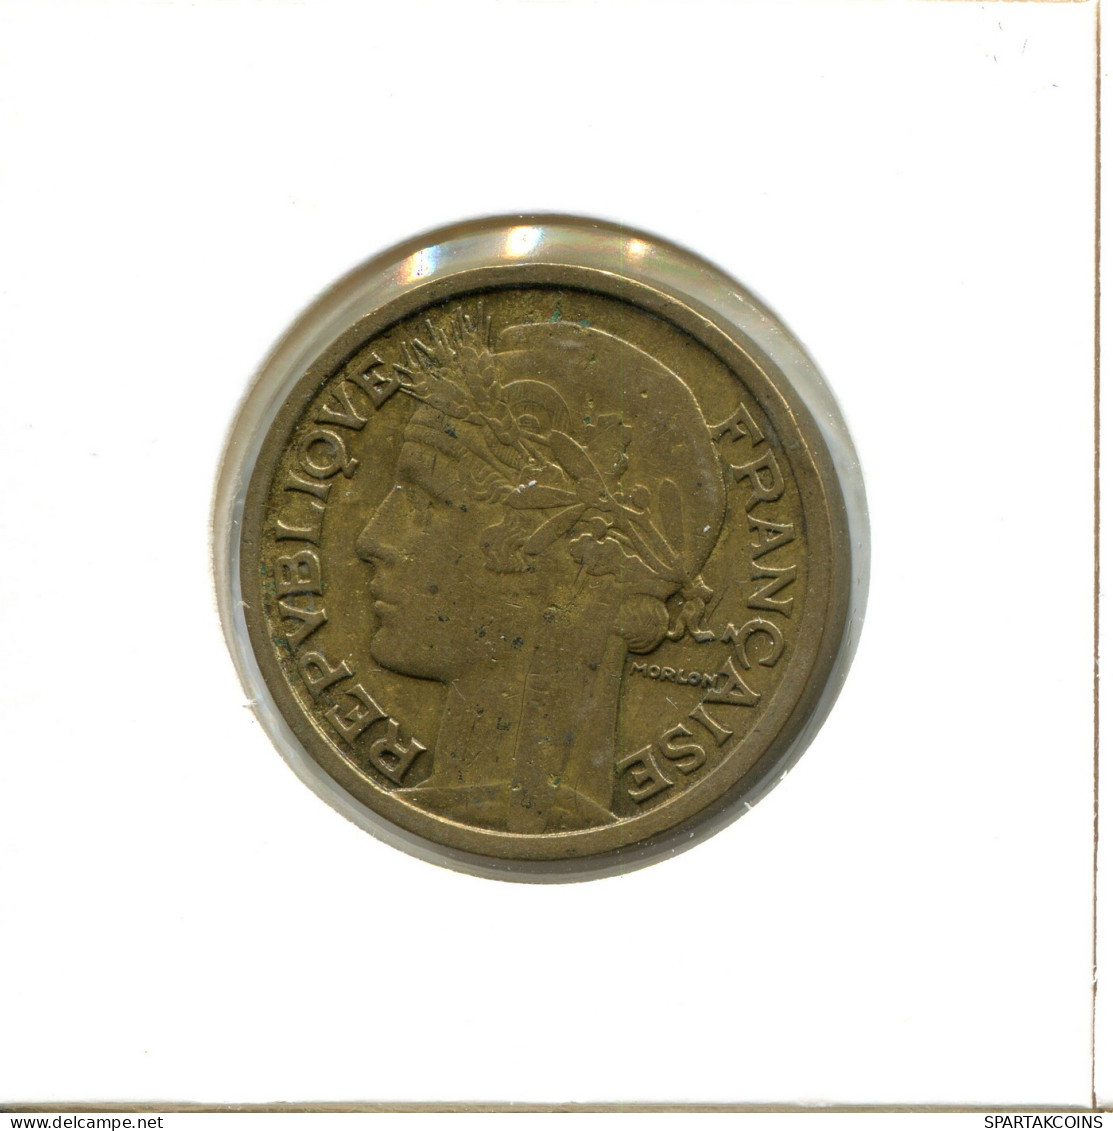 2 FRANCS 1936 FRANKREICH FRANCE Französisch Münze #AX597.D.A - 2 Francs